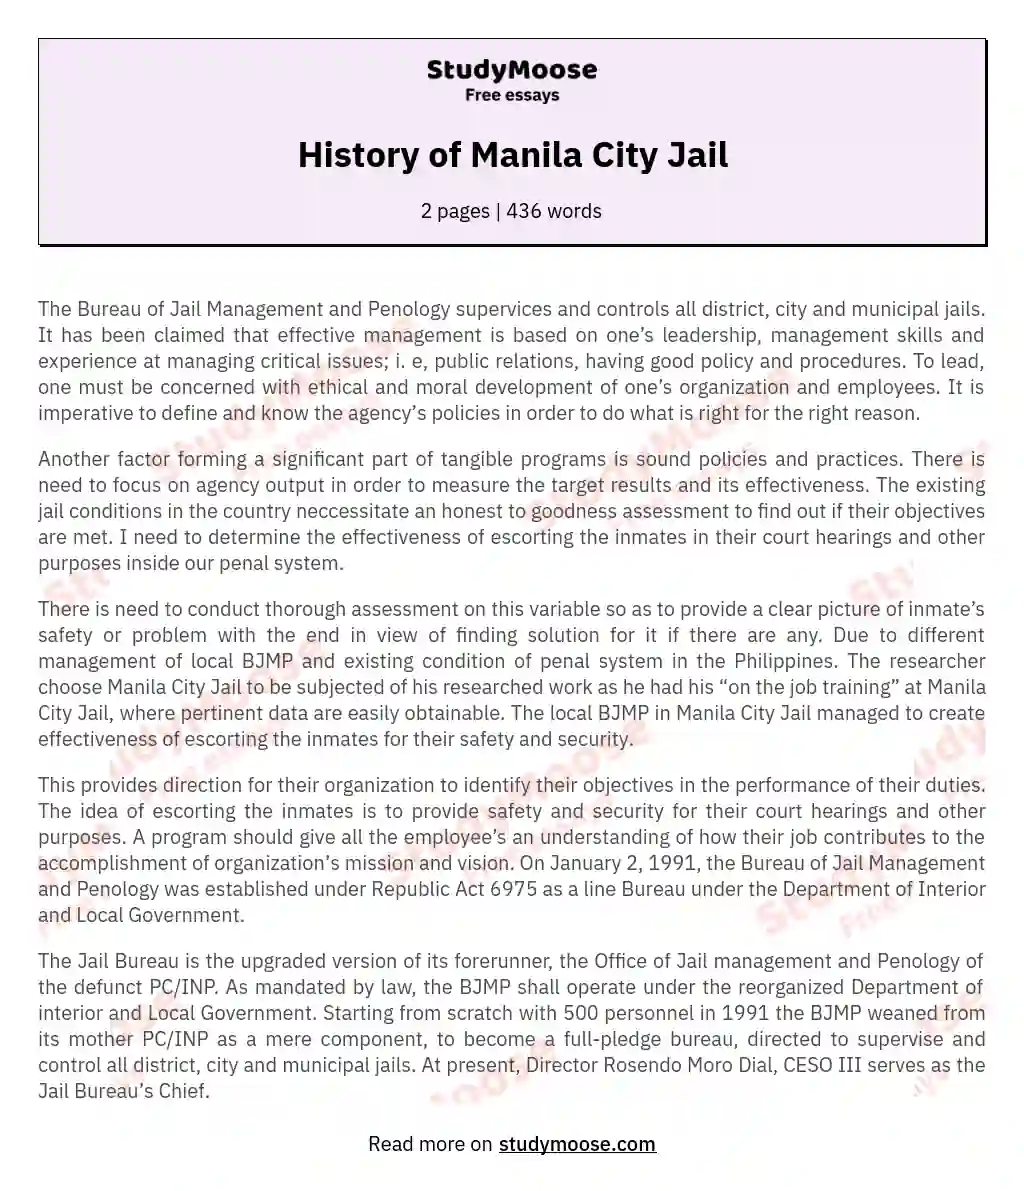 History of Manila City Jail